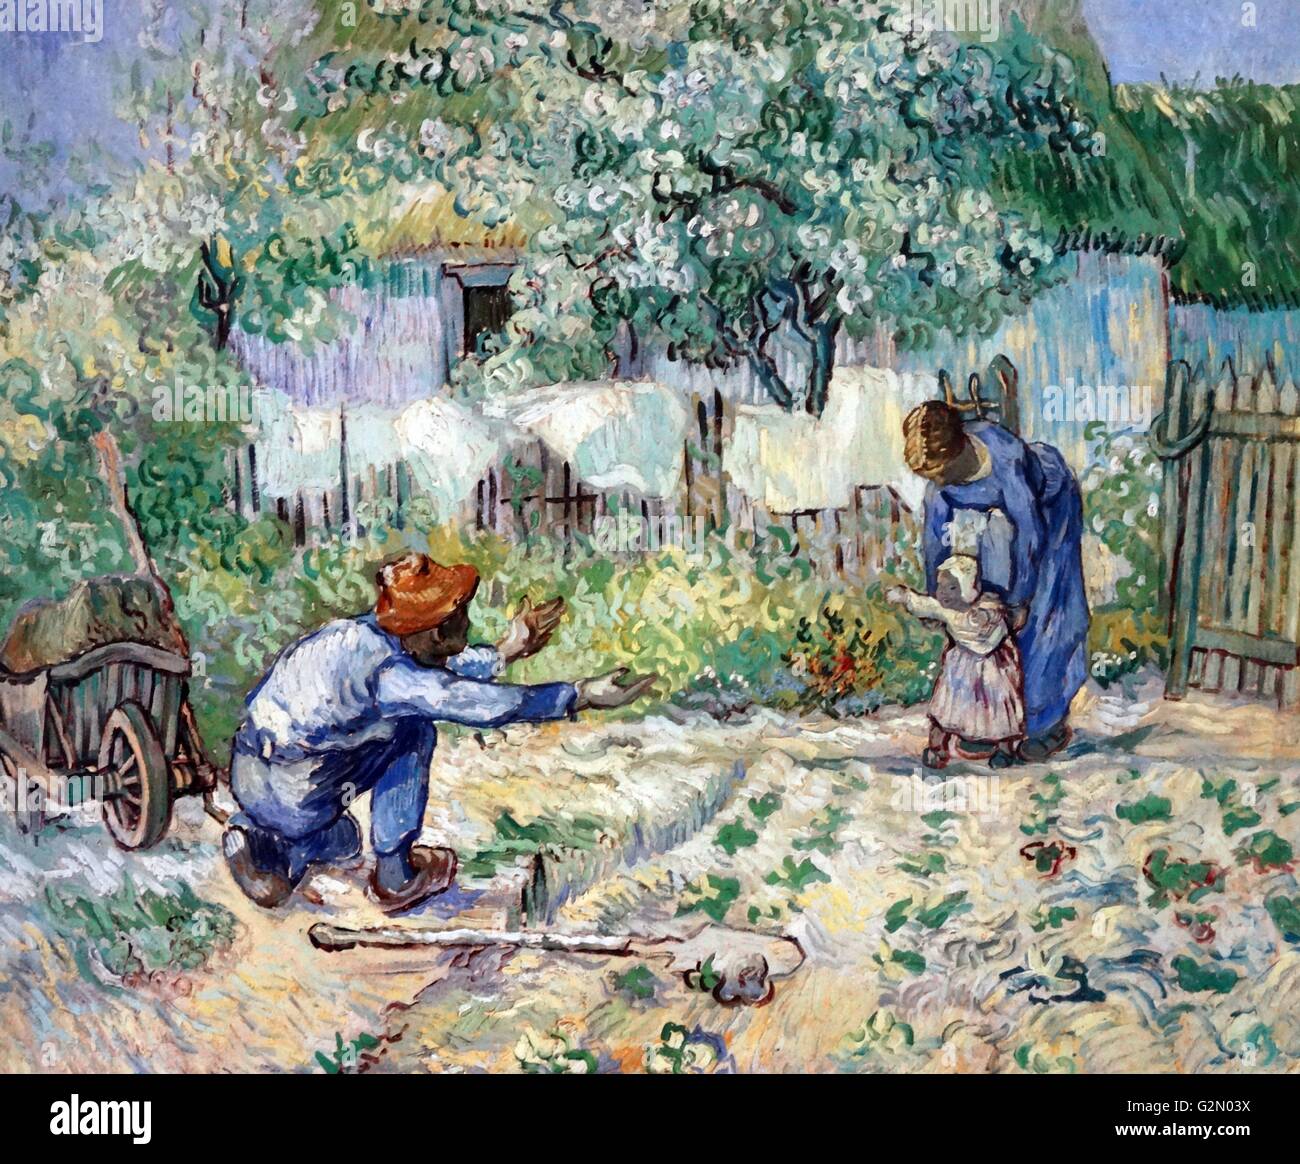 Olio su tela dipinto dal famoso artista olandese Vincent Van Gogh (30 marzo 1853 - 29 luglio 1890), opera intitolata "Primi passi". Completato nel 1890. Foto Stock